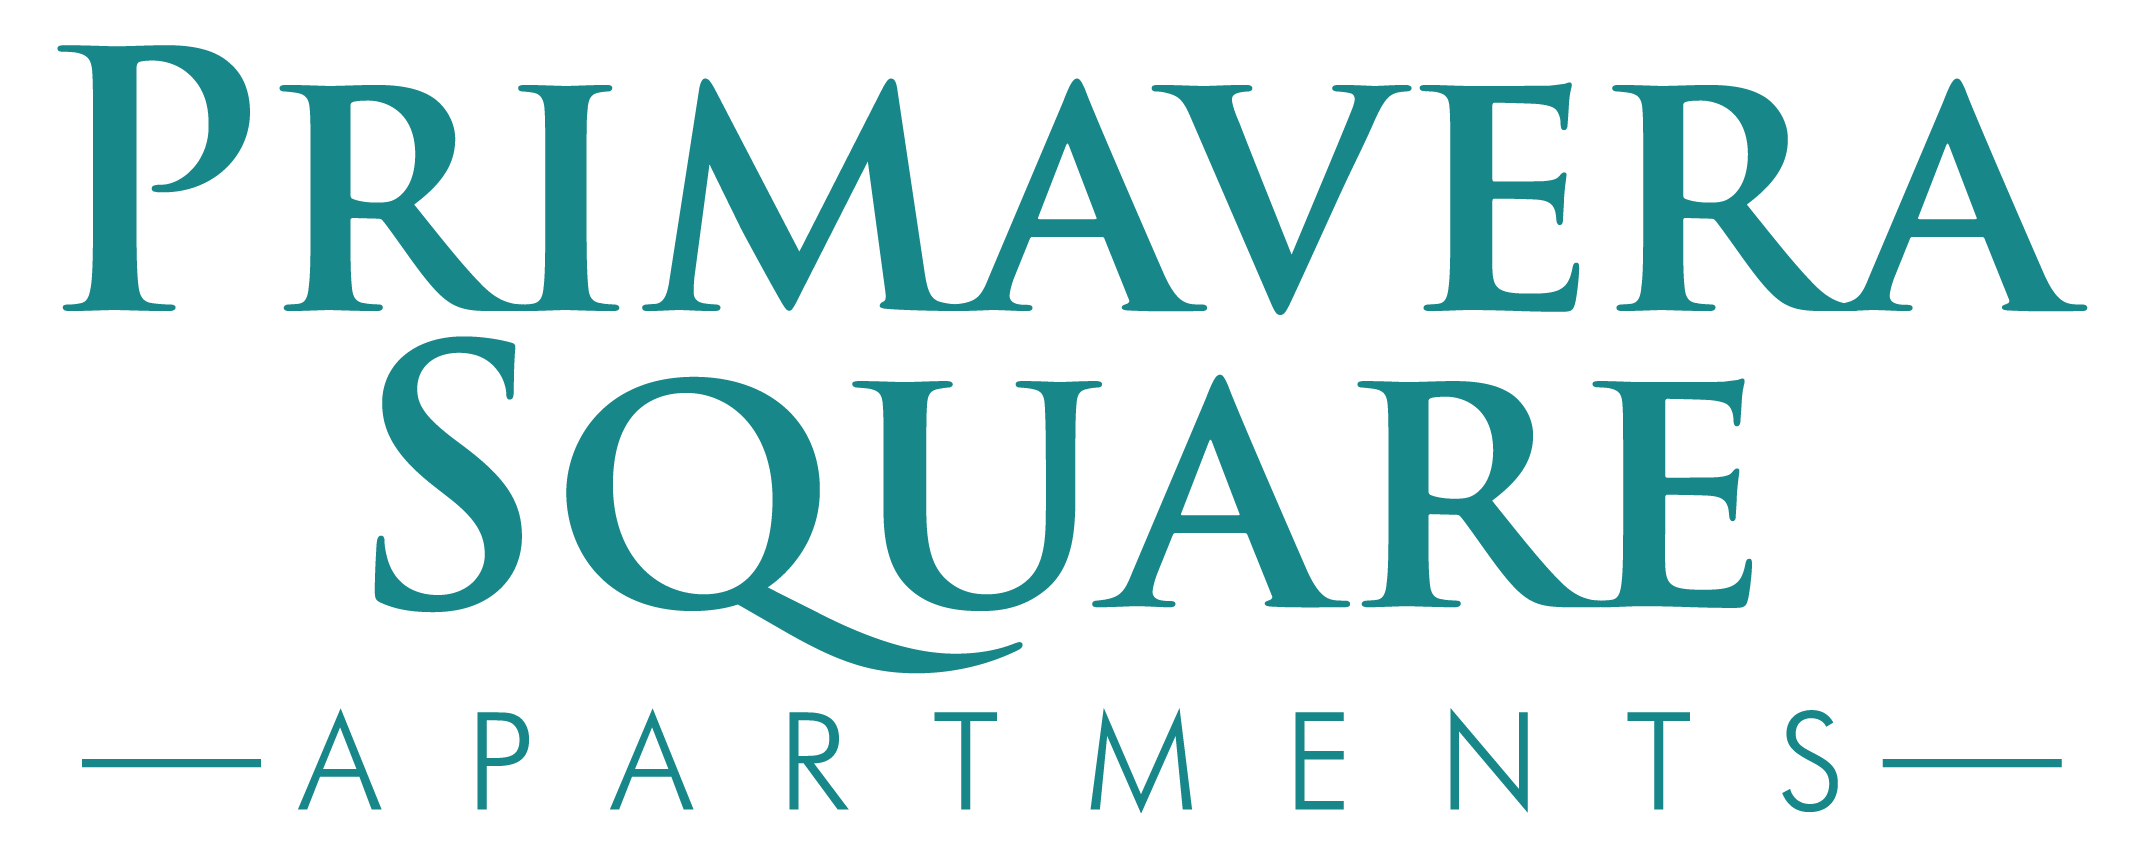 Primavera Square Apartments Promotional Logo